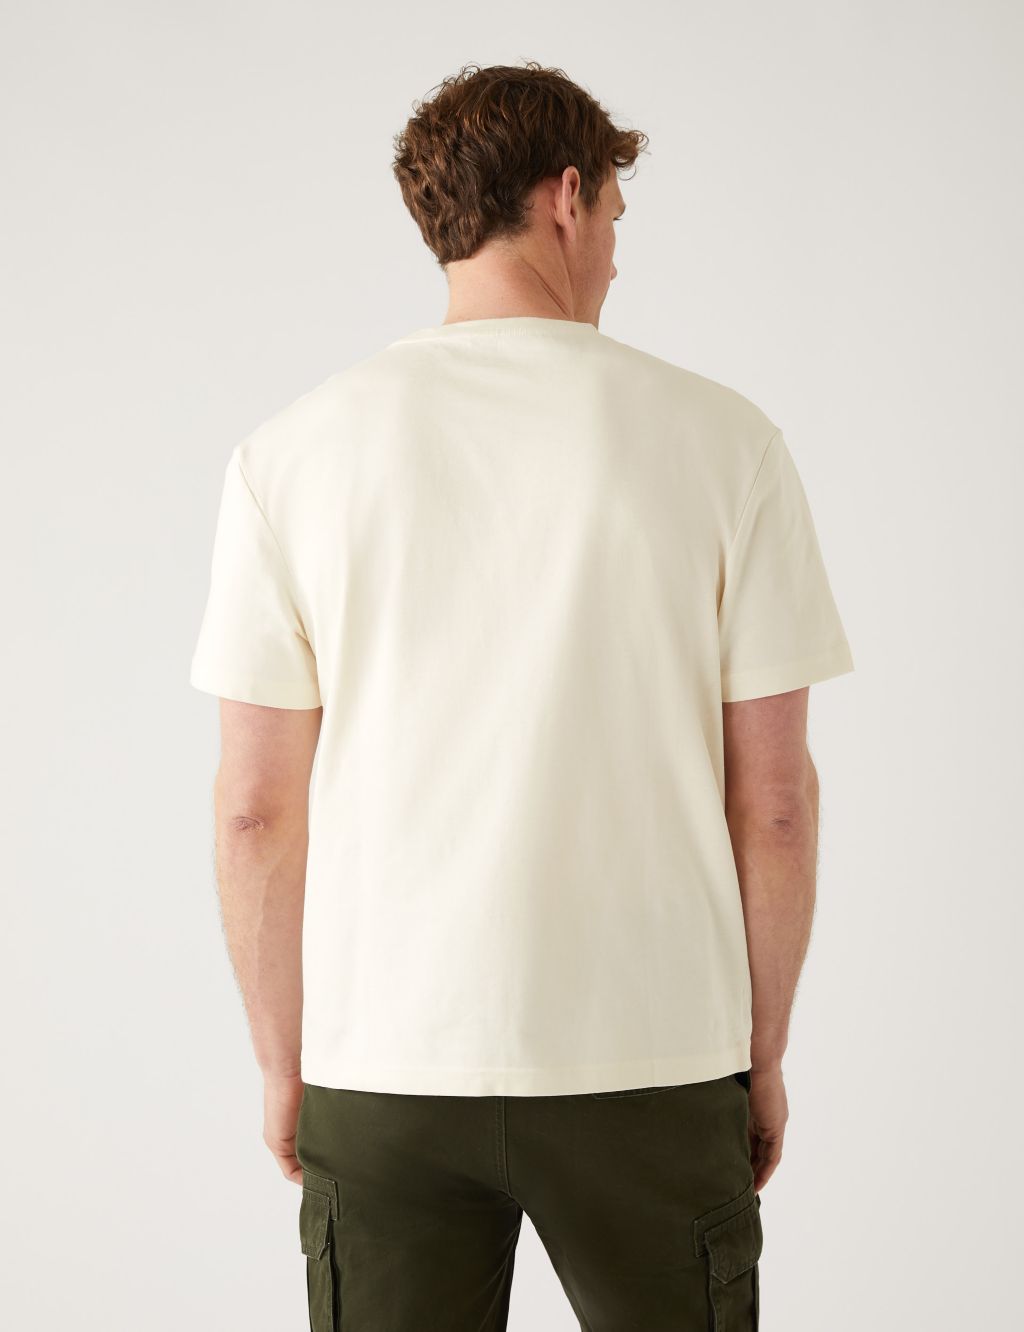 Pure Cotton Cote d'Azur Graphic T-Shirt image 4